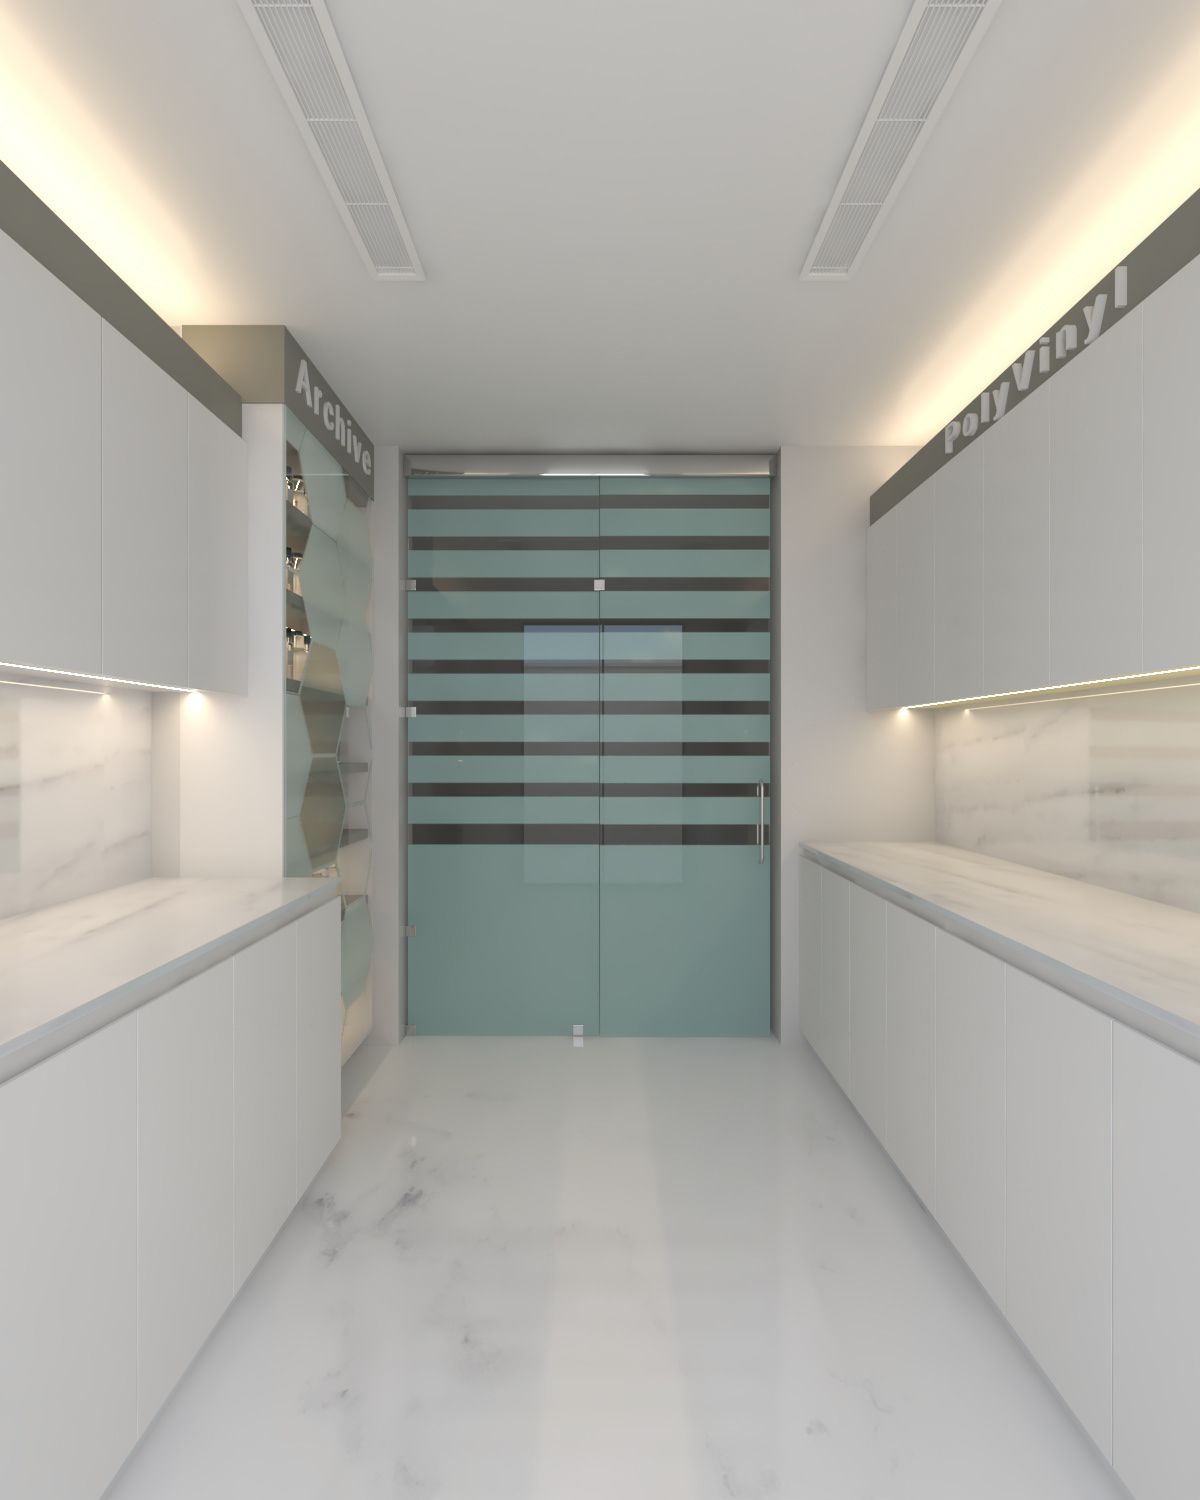 indoor architecture interior design  Render visualization 3ds max modern vray